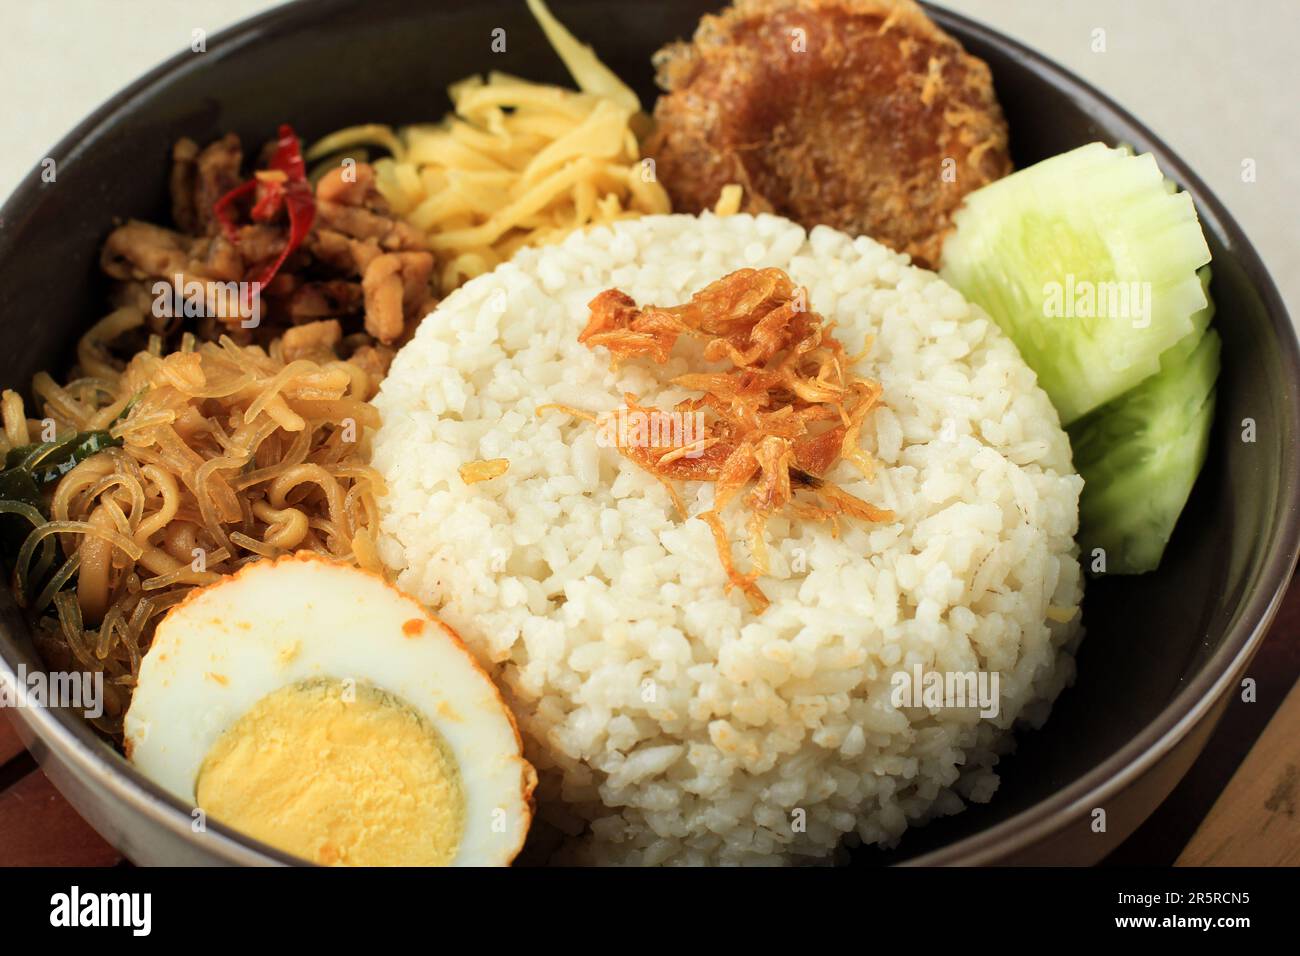 Nahaufnahme von Nasi Uduk mit gebratenen Schalotten oder Bawang Goreng, beliebtes indonesisches Street Food-Menü zum Frühstück. Stockfoto